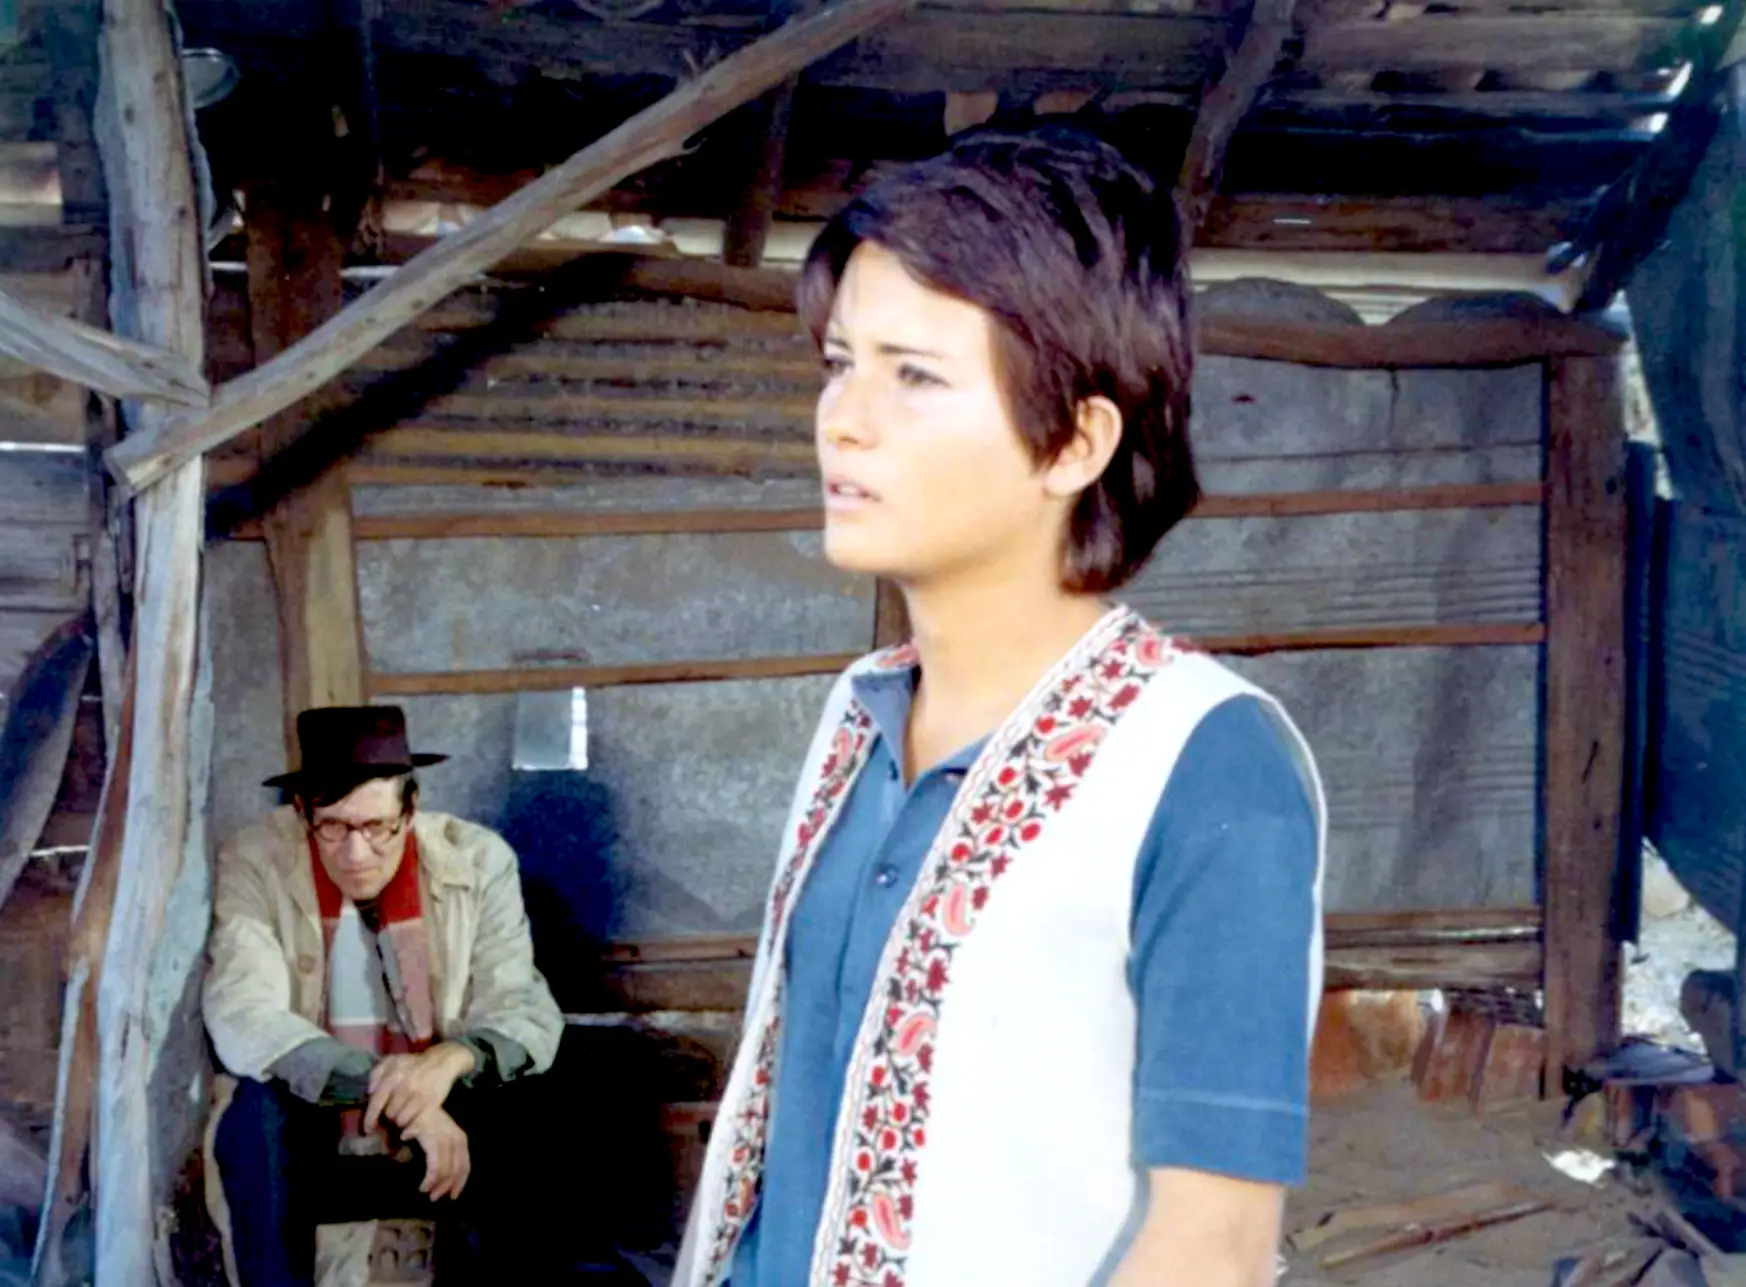 José Viana e Maria Cabral em "O Recado" (1971), agora disponível em DVD